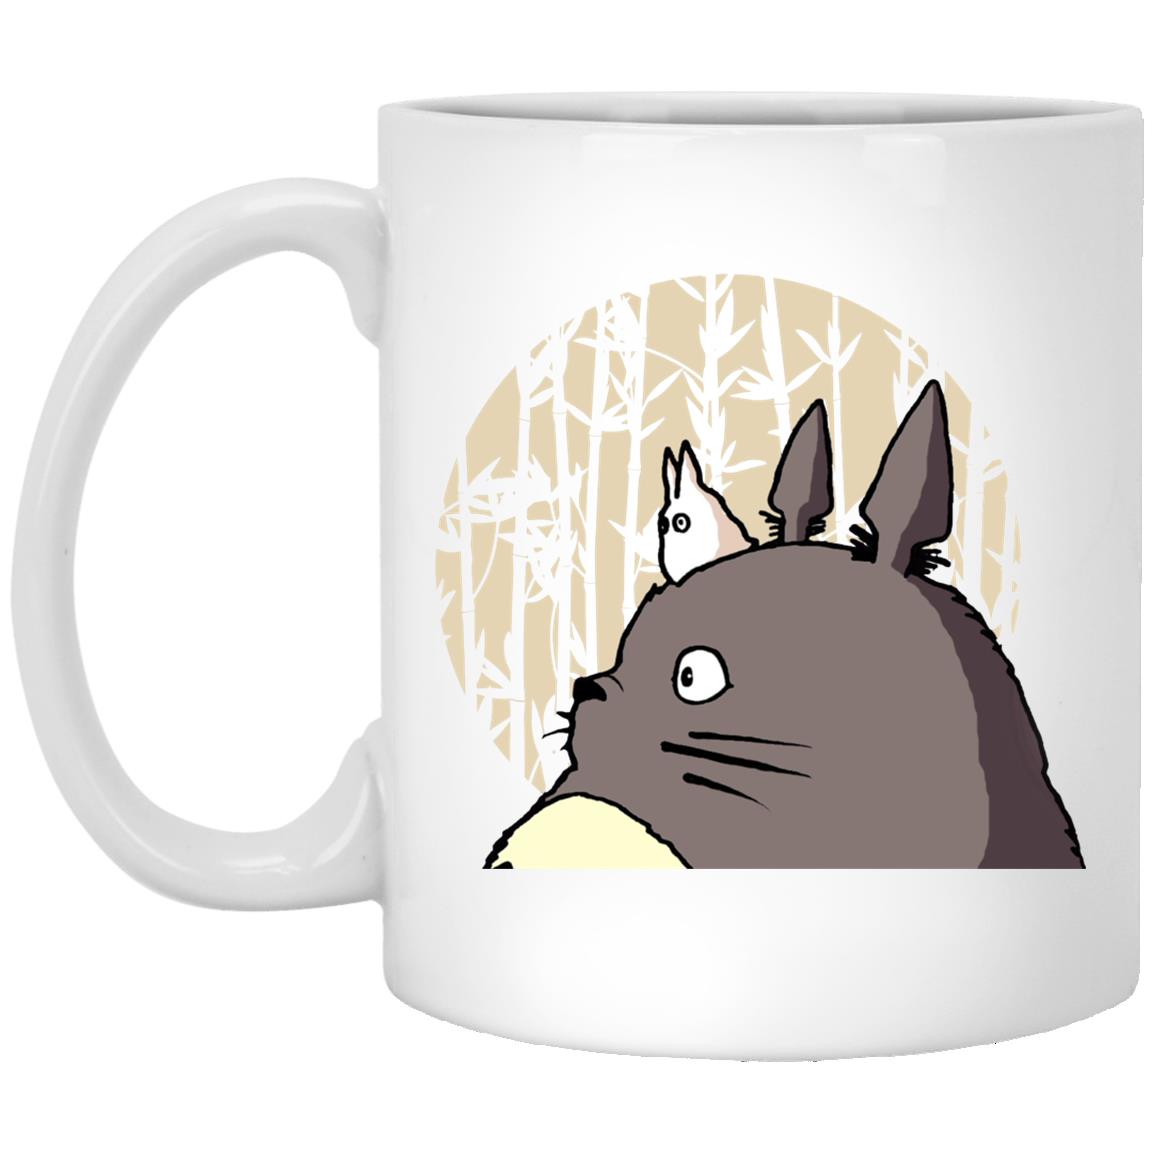 Oh-Totoro and Chibi-Totoro Mug